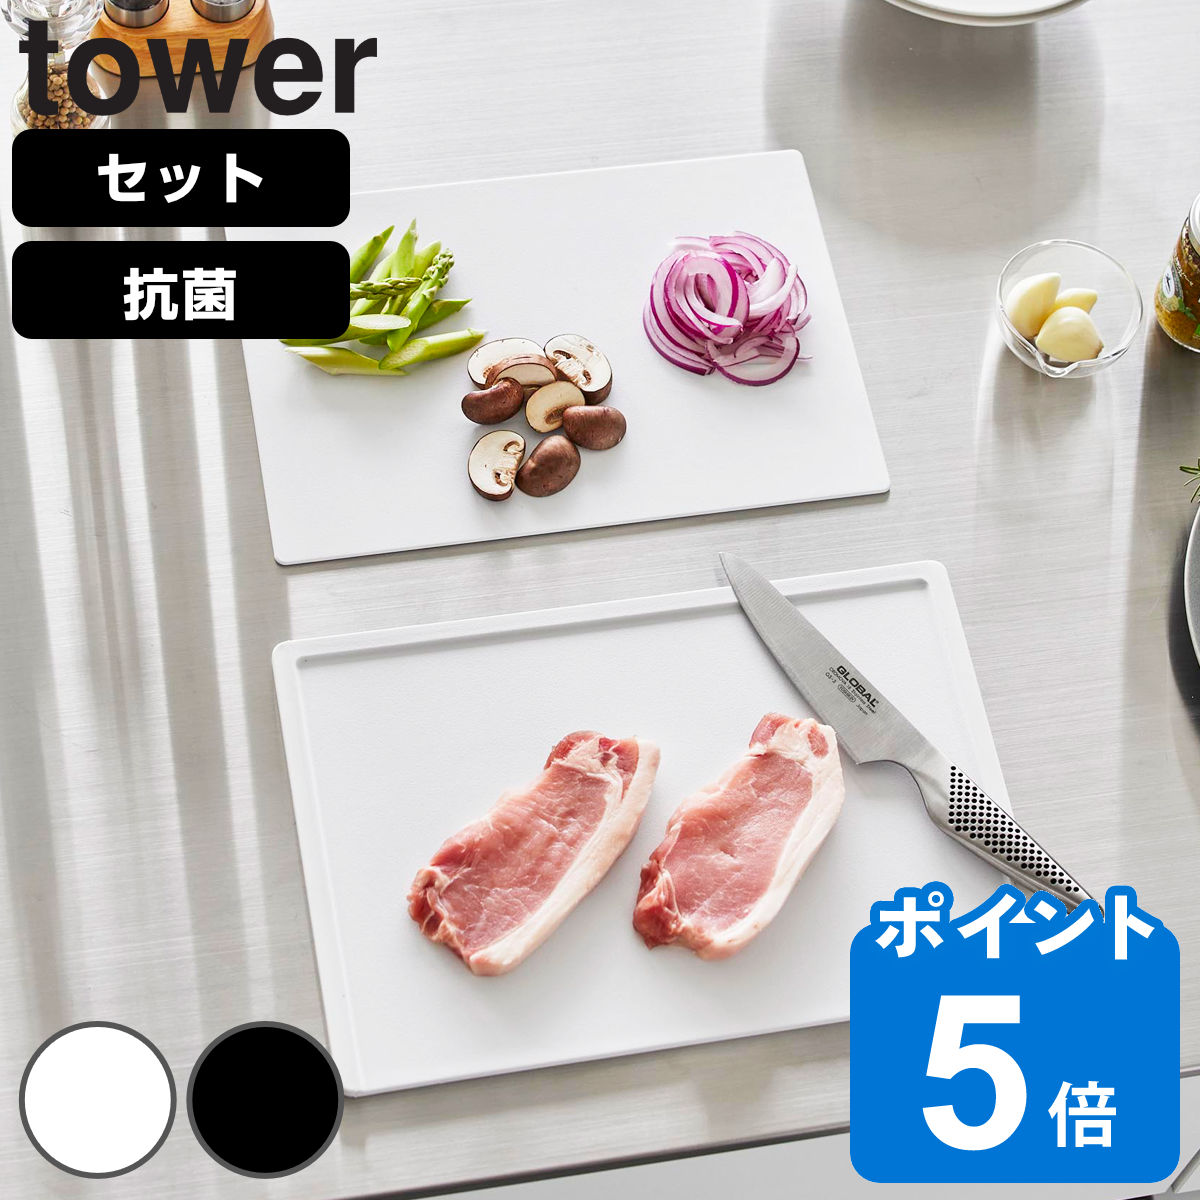 山崎実業 tower 抗菌まな板＆シートまな板セット タワー